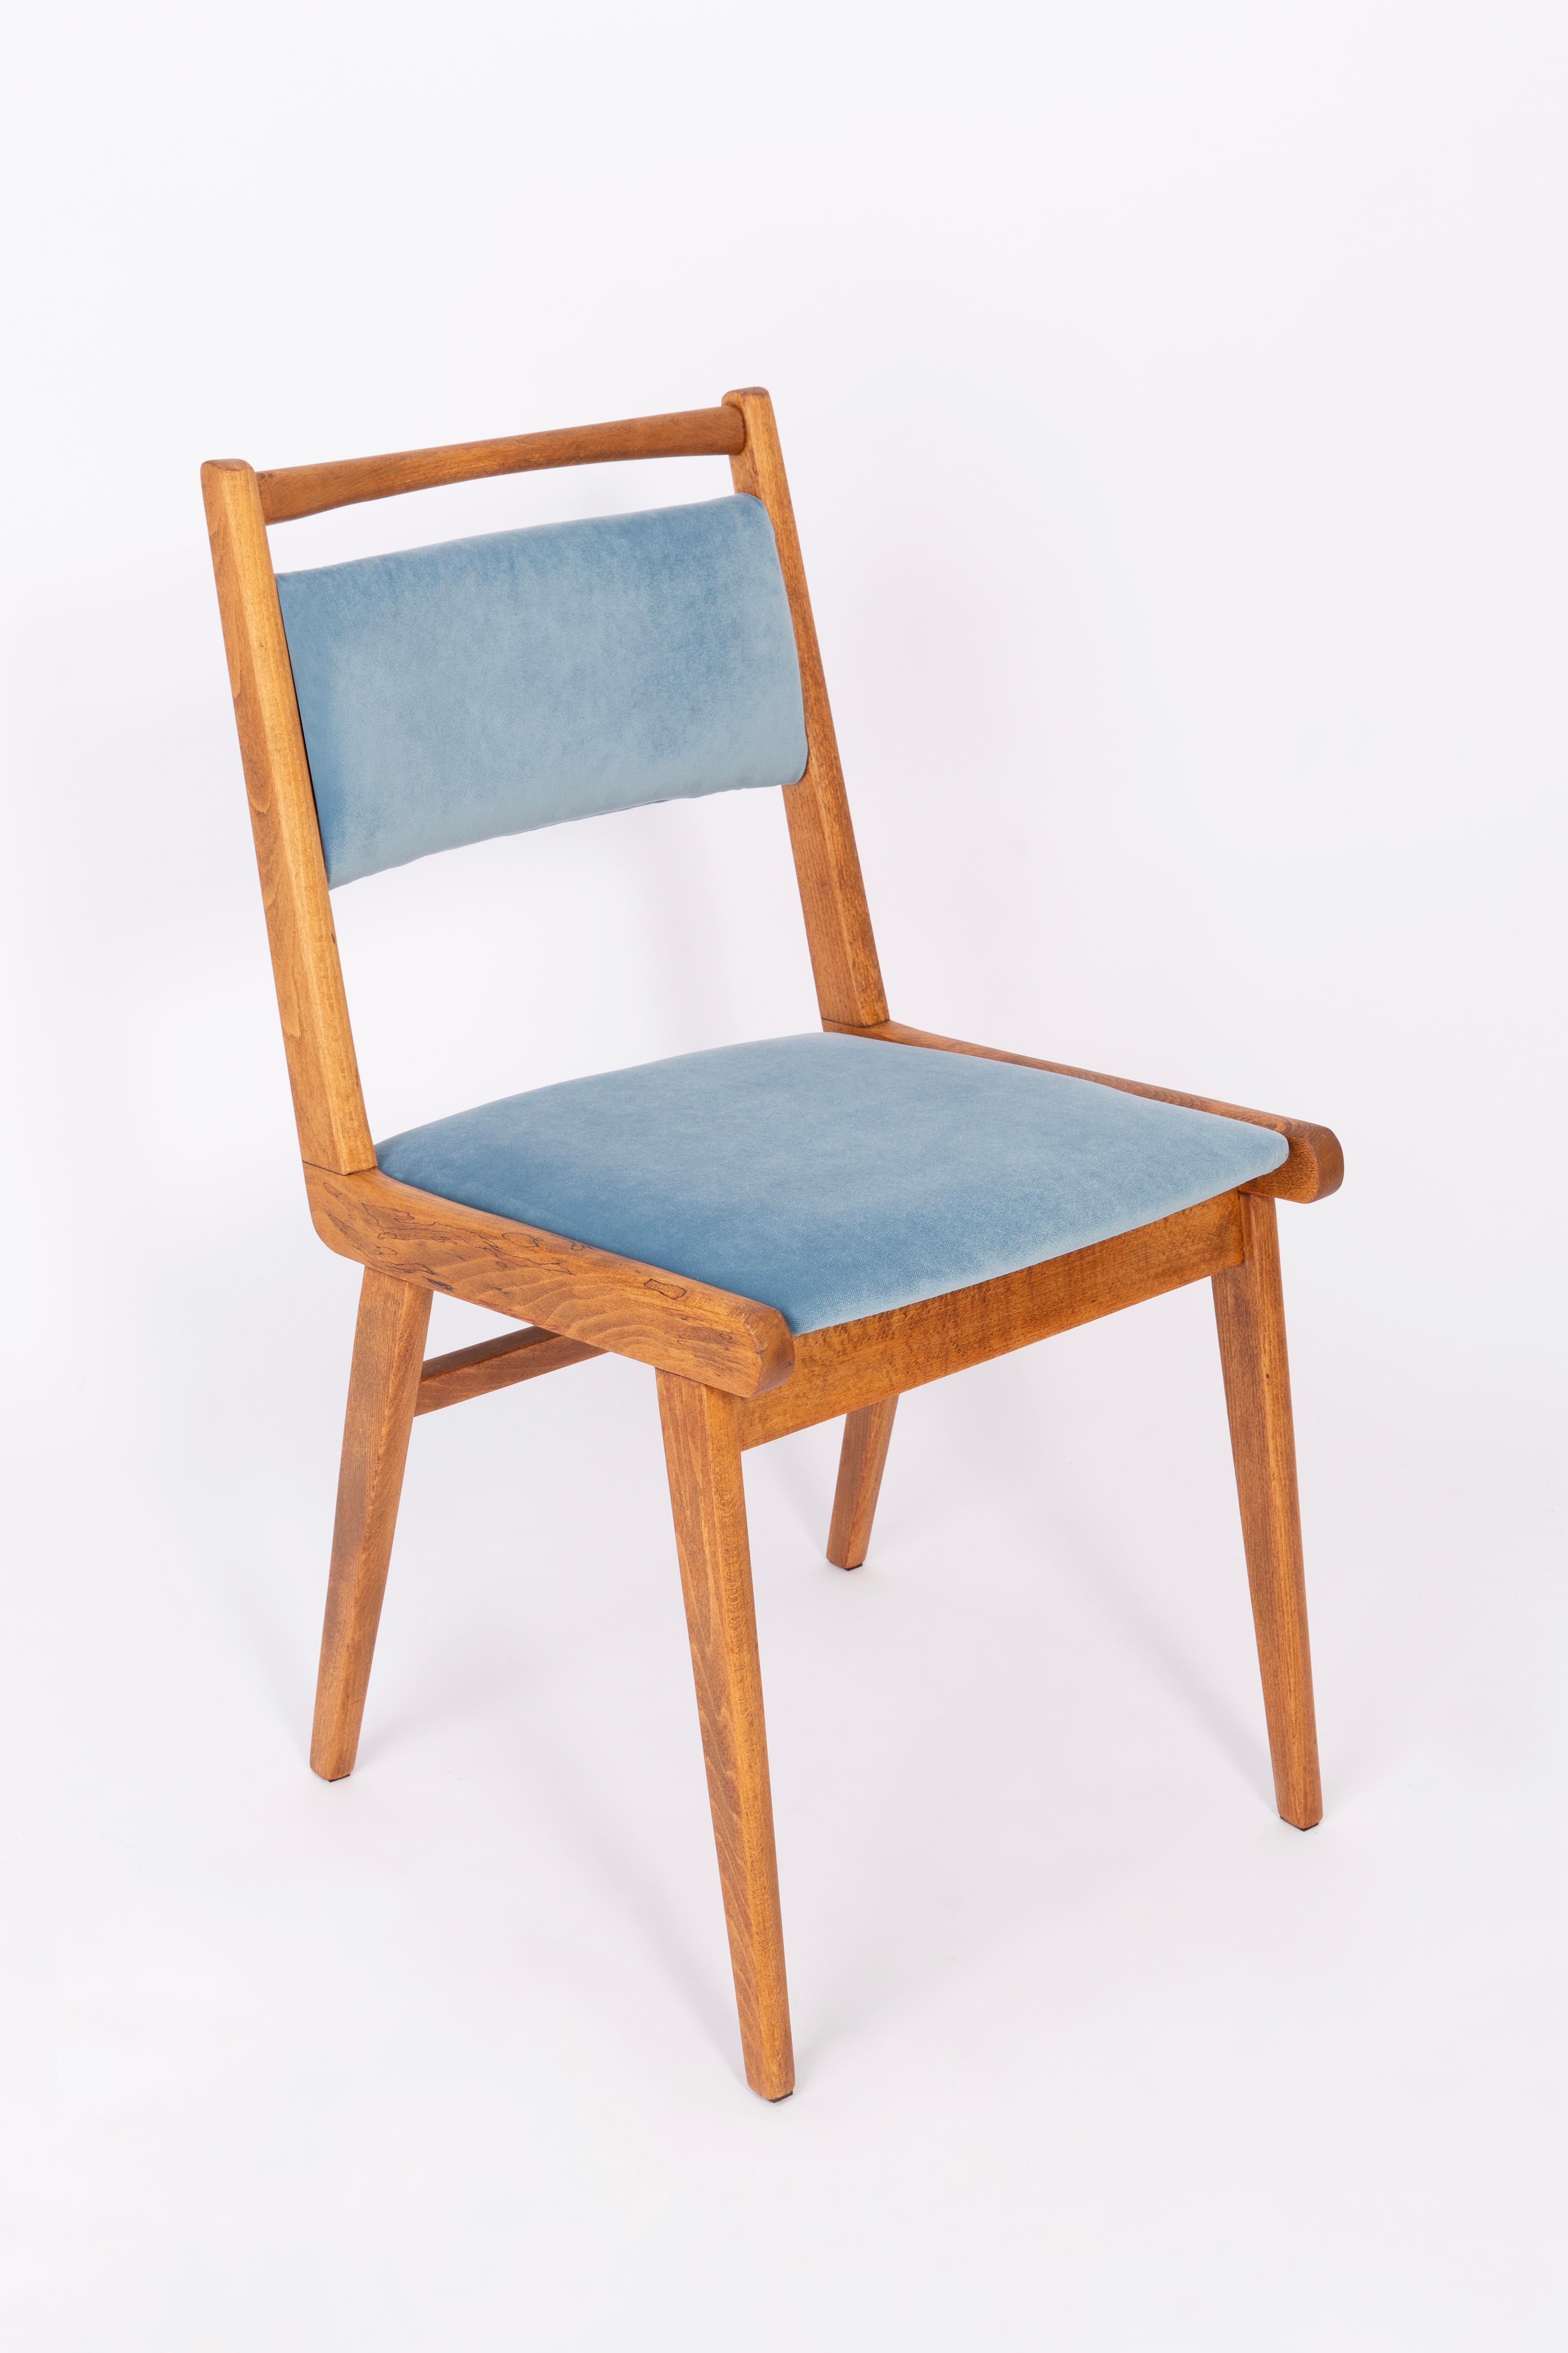 Stühle entworfen von Prof. Rajmund Halas. Es handelt sich um ein Einmachglas-Modell. Hergestellt aus Buchenholz. Die Stühle sind komplett neu gepolstert, die Holzarbeiten wurden aufgefrischt. Sitz und Rückenlehne sind mit einem blauen (Nummer 31),